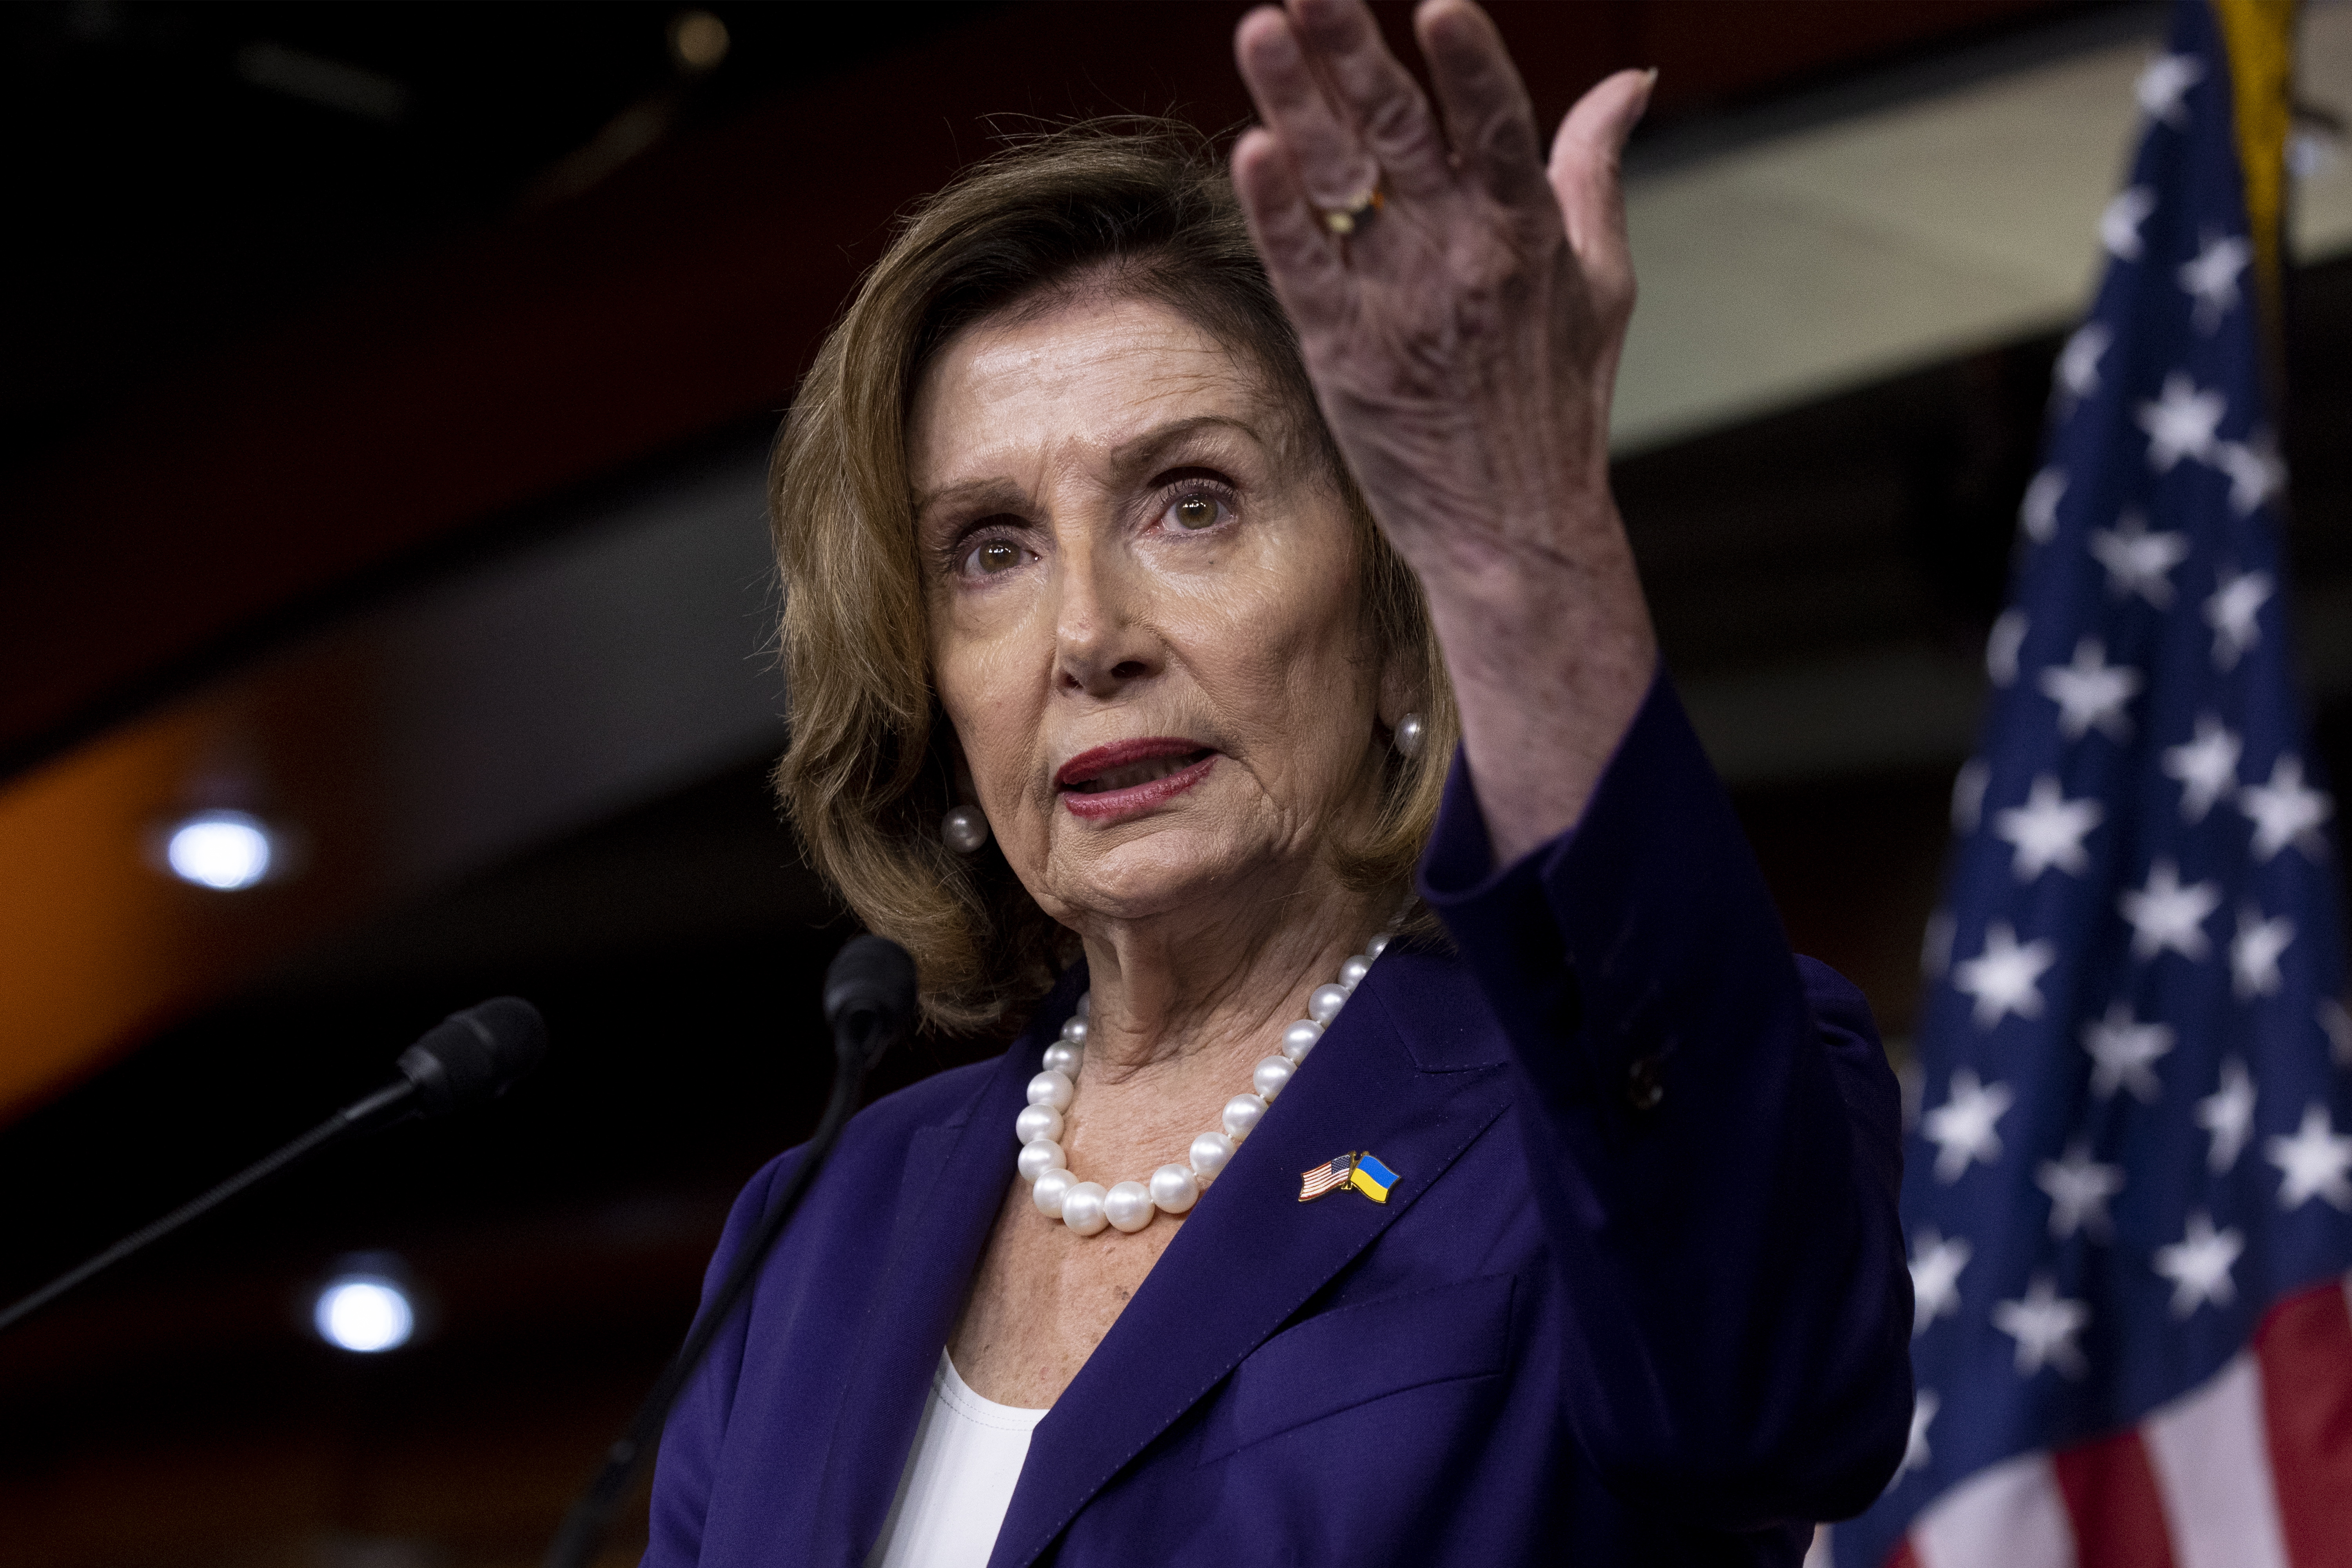 Nancy Pelosi se mostró “desconsolada y traumatizada” por el ataque contra su esposo